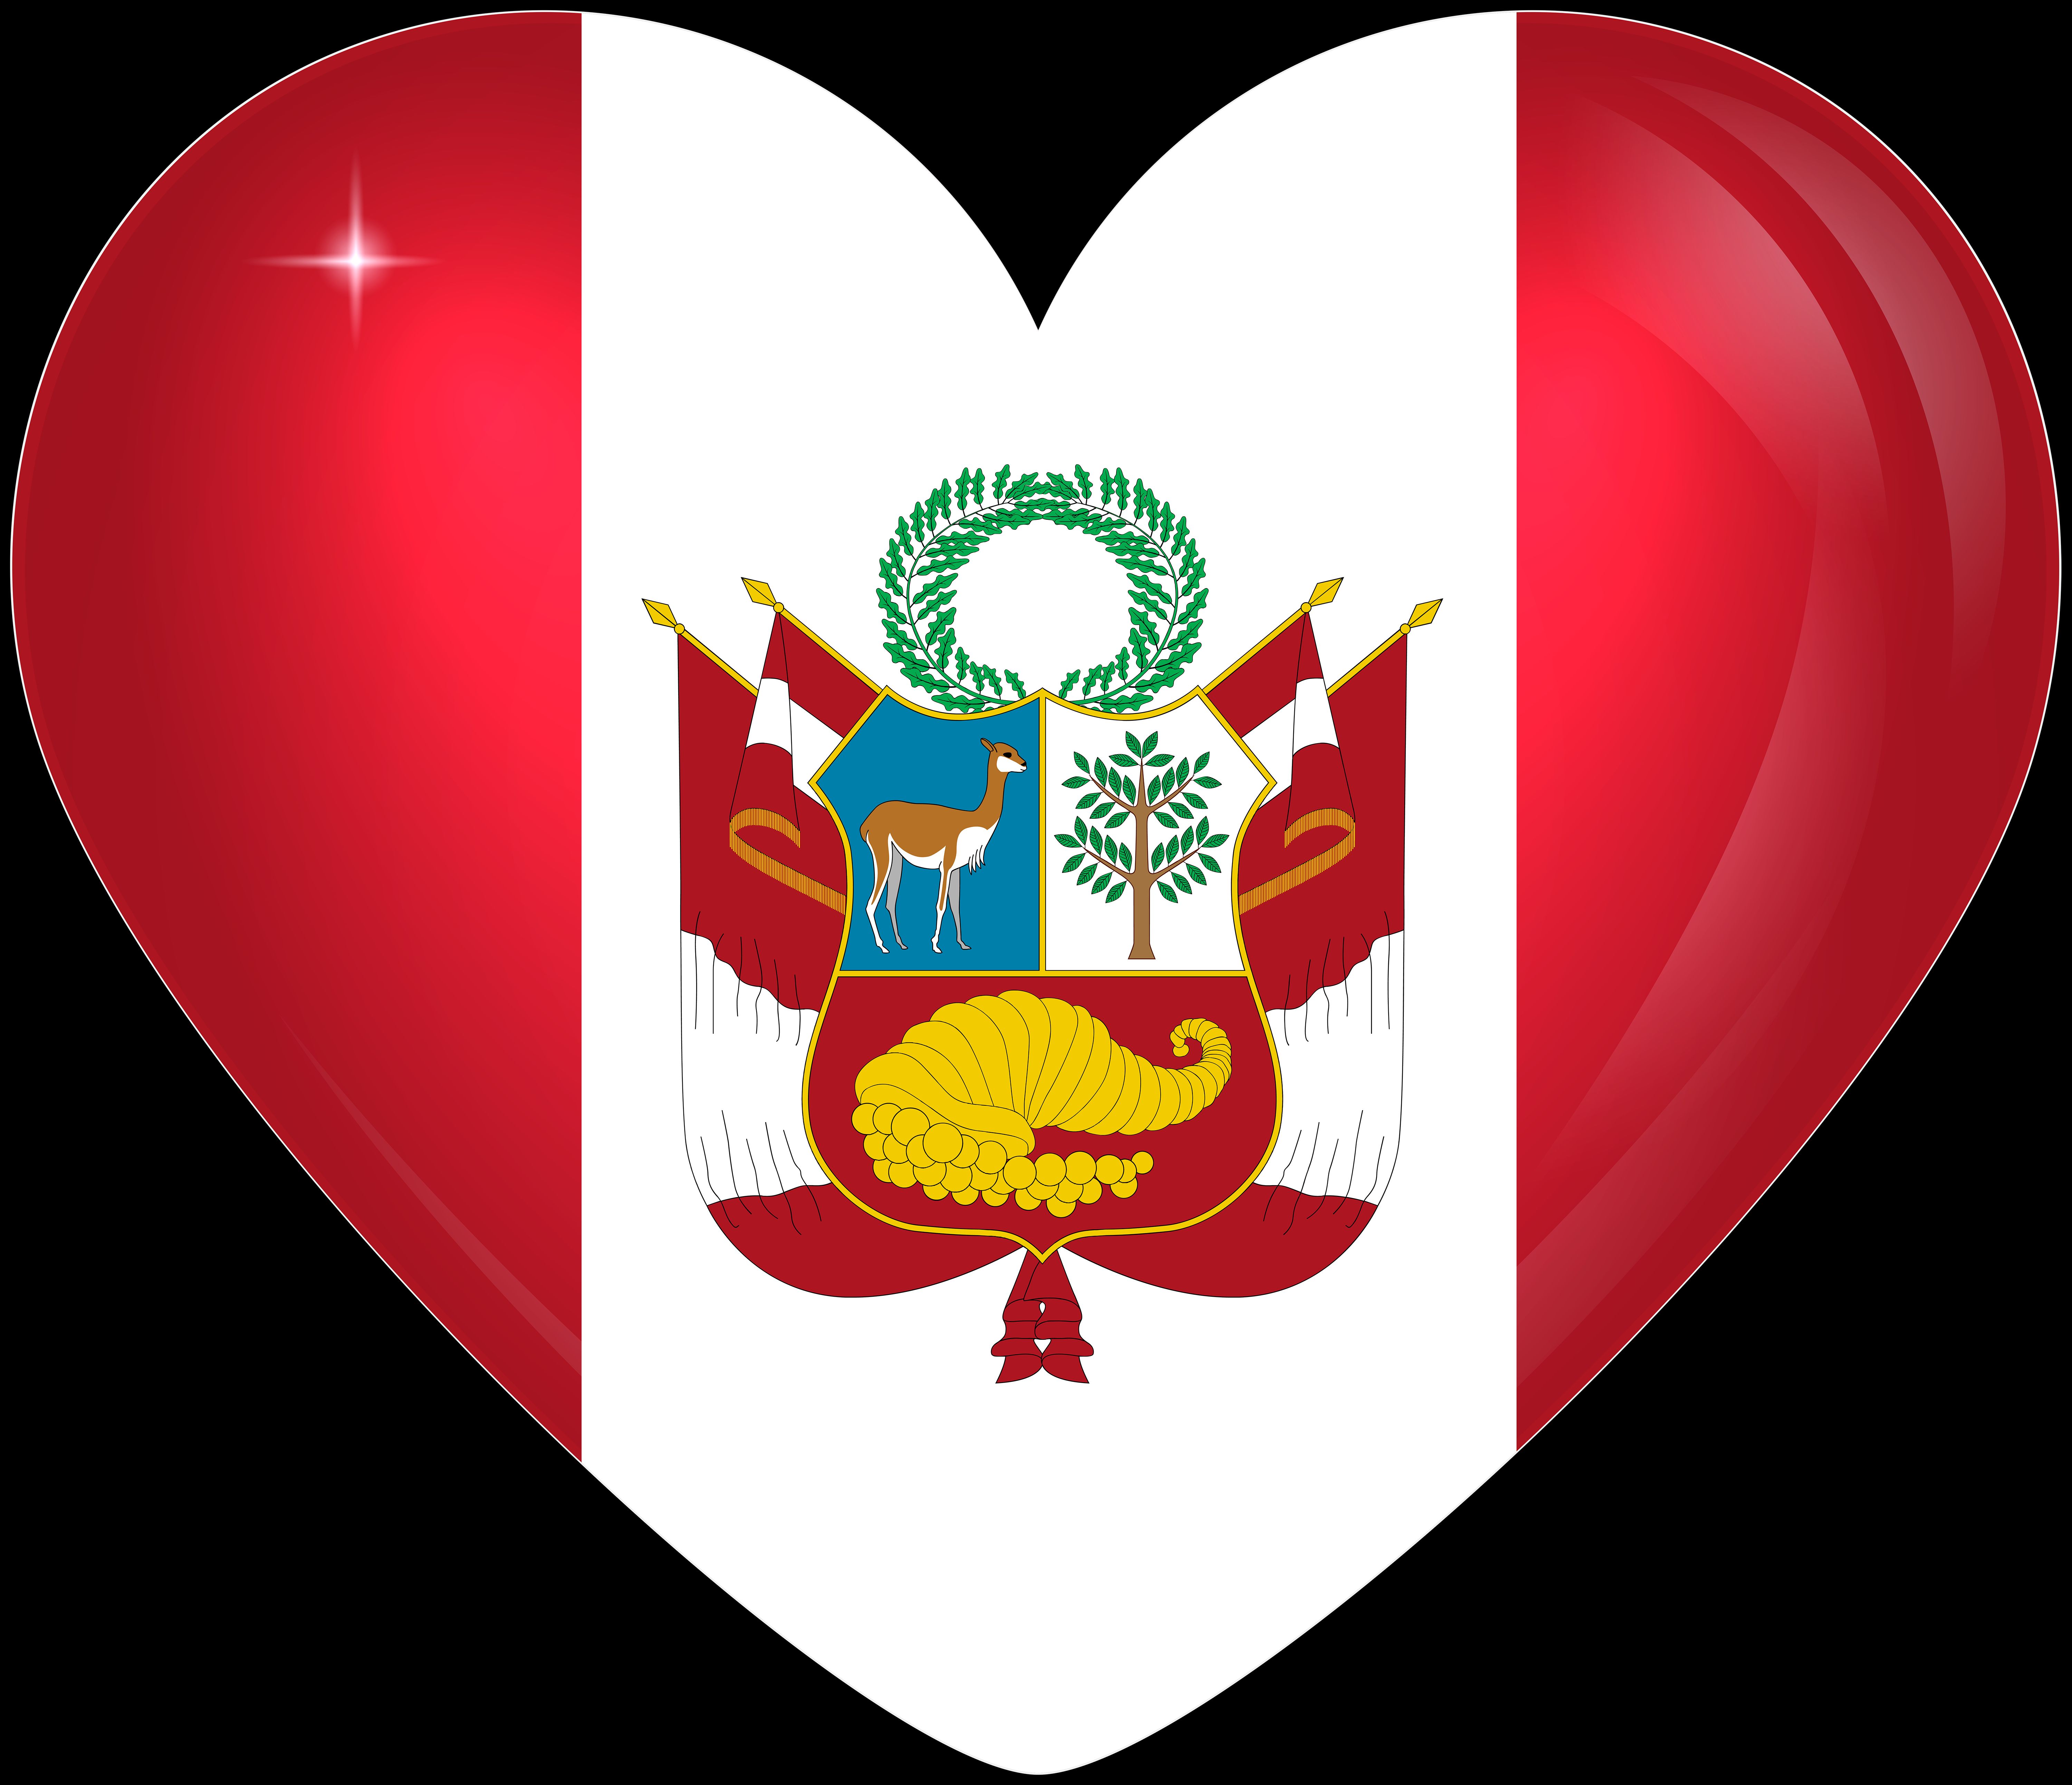 Скачать обои бесплатно Флаги, Разное, Сердце, Флаг, Перуанский Флаг, Флаг Перу картинка на рабочий стол ПК